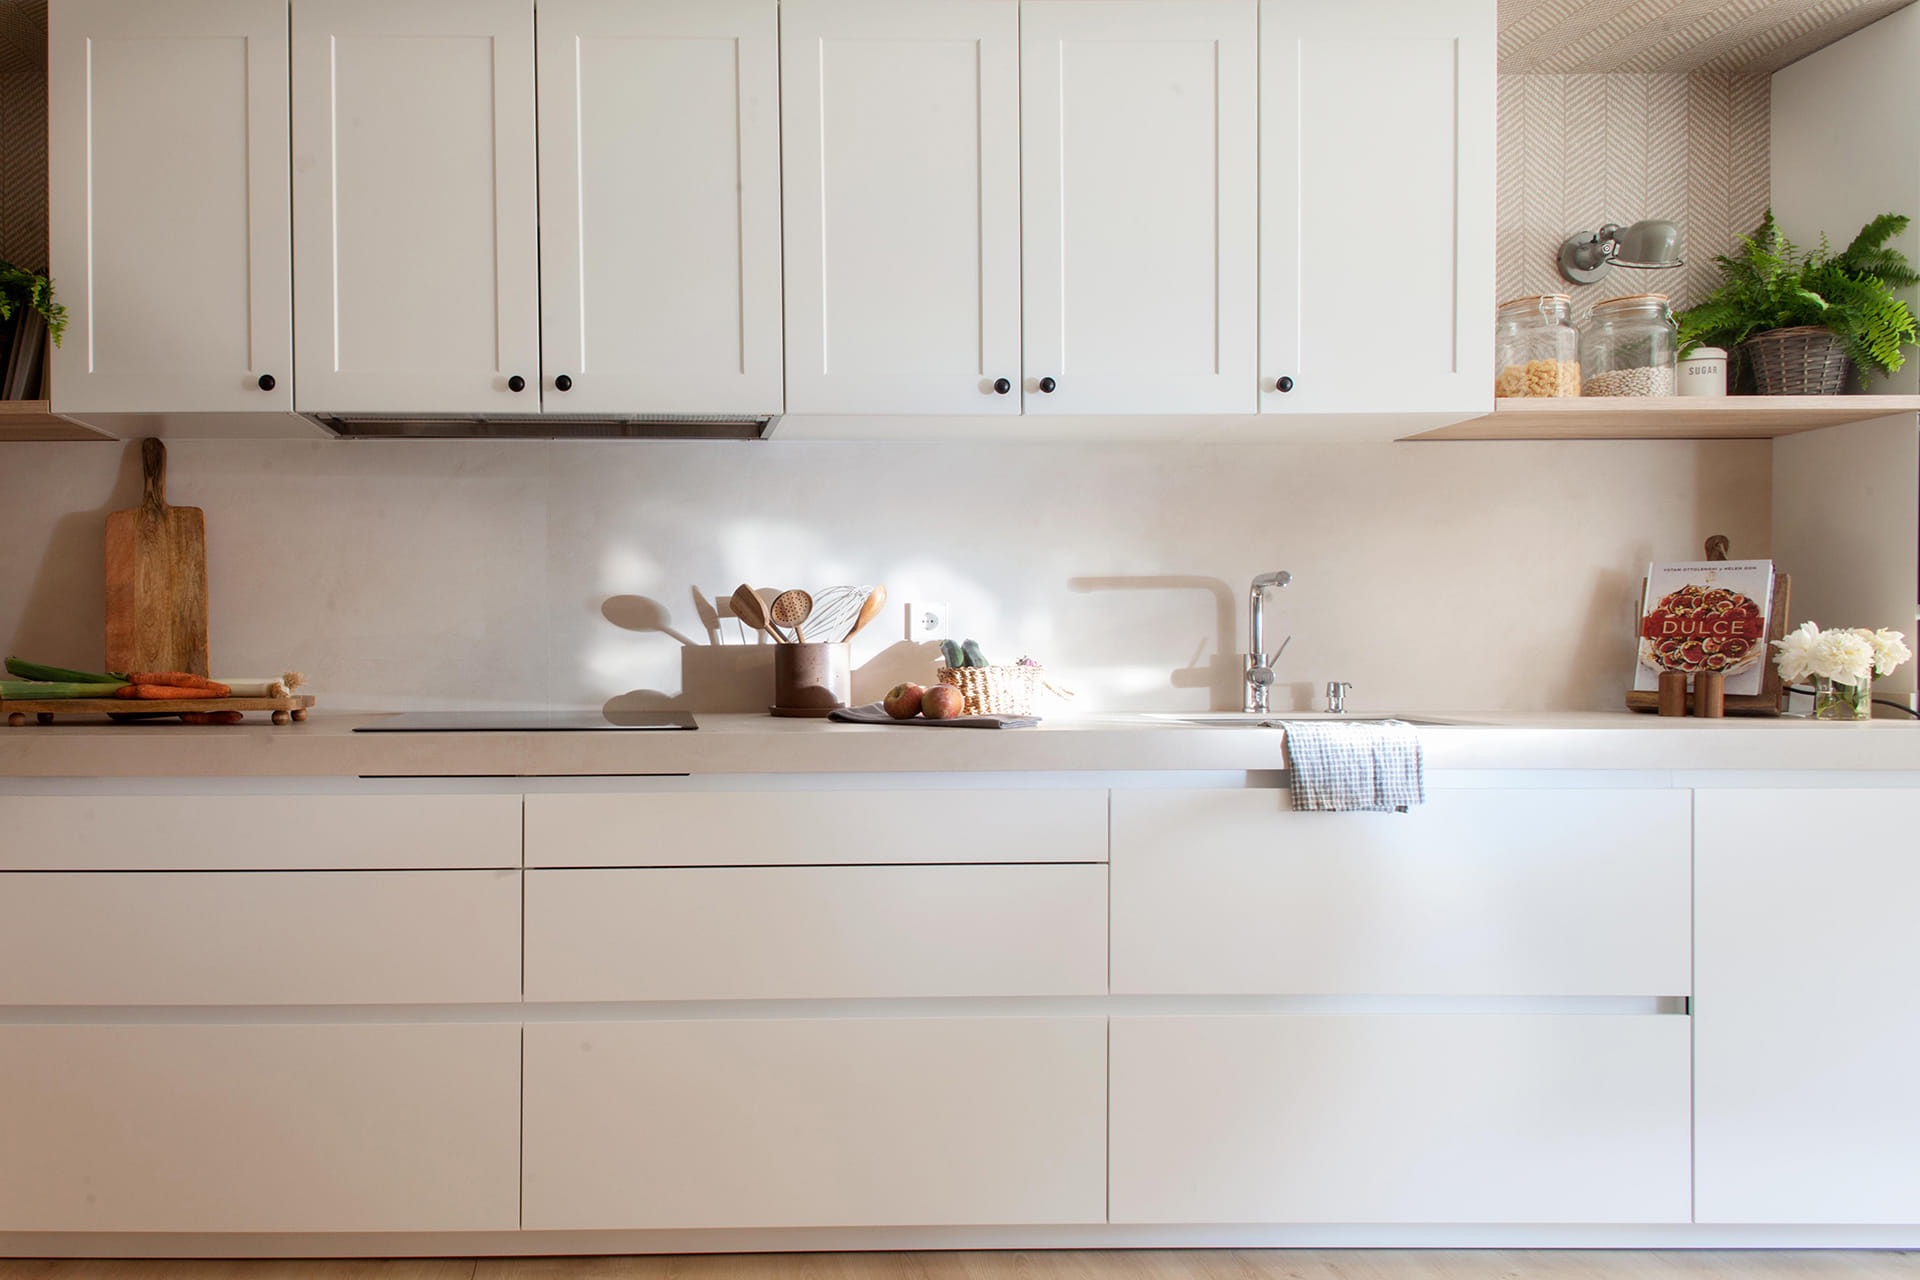 Santos kitchen cabinet in off-white finish